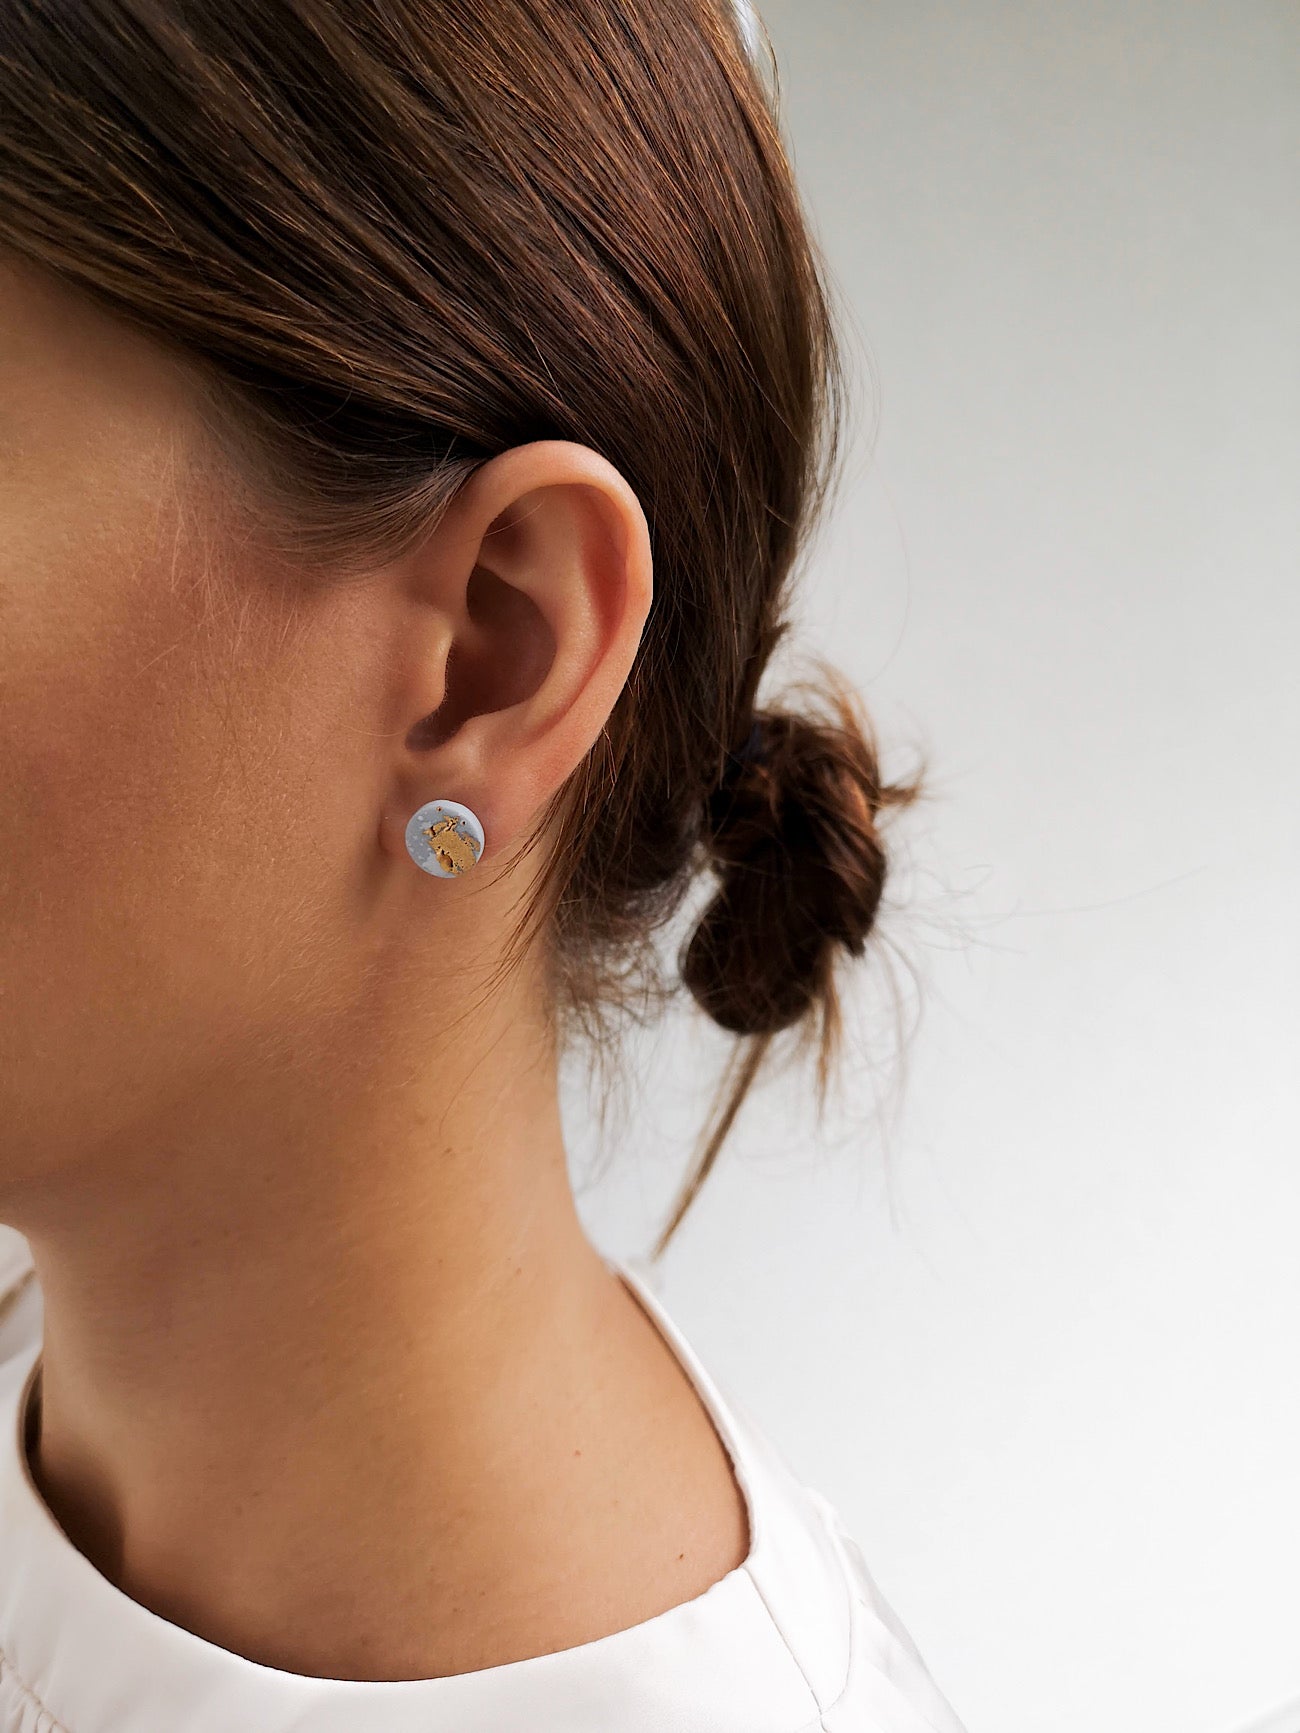 "ELYSIA" porcelain earrings